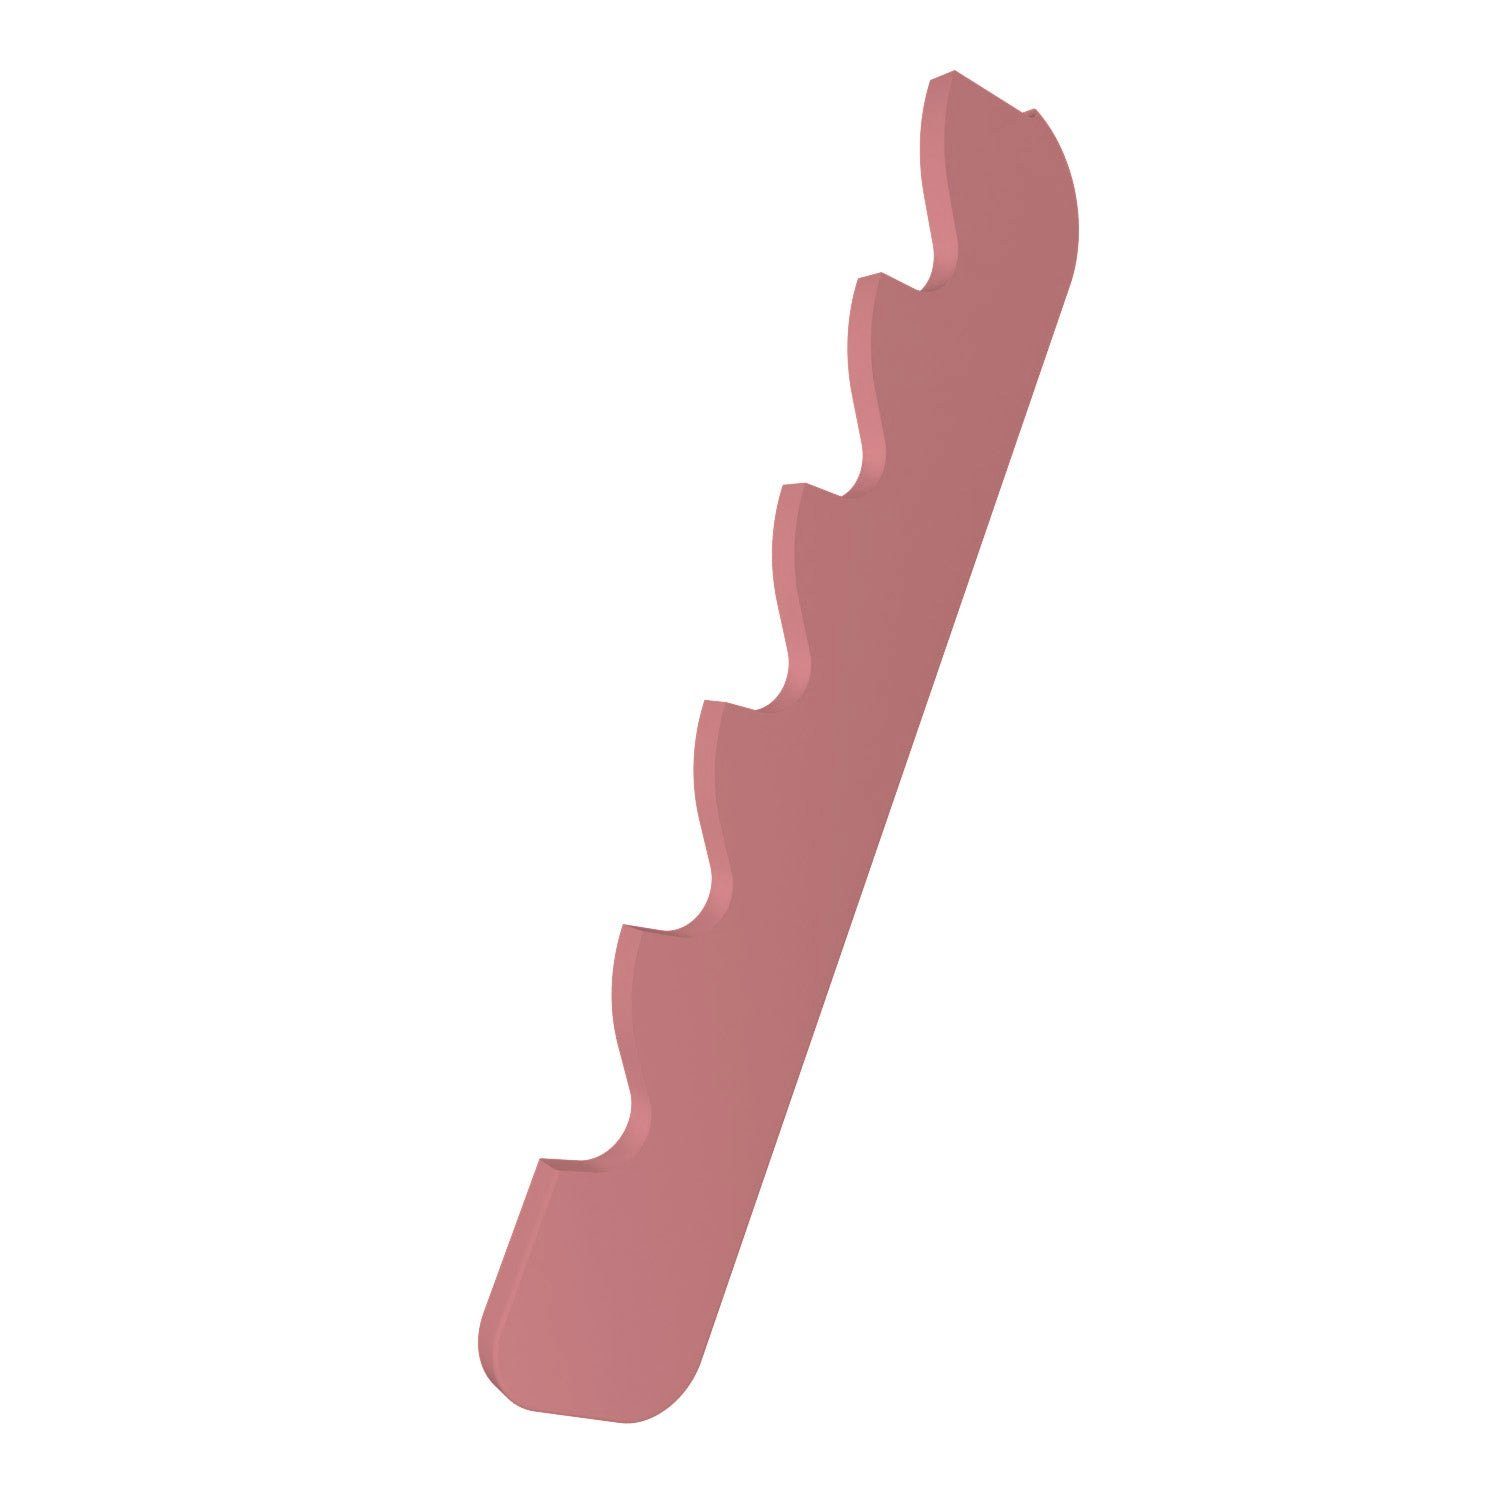 Jalousie Feststeller kompatibel für Jalousien Rolladen Stopper Halter 10 Farbe, fossi3D Pink